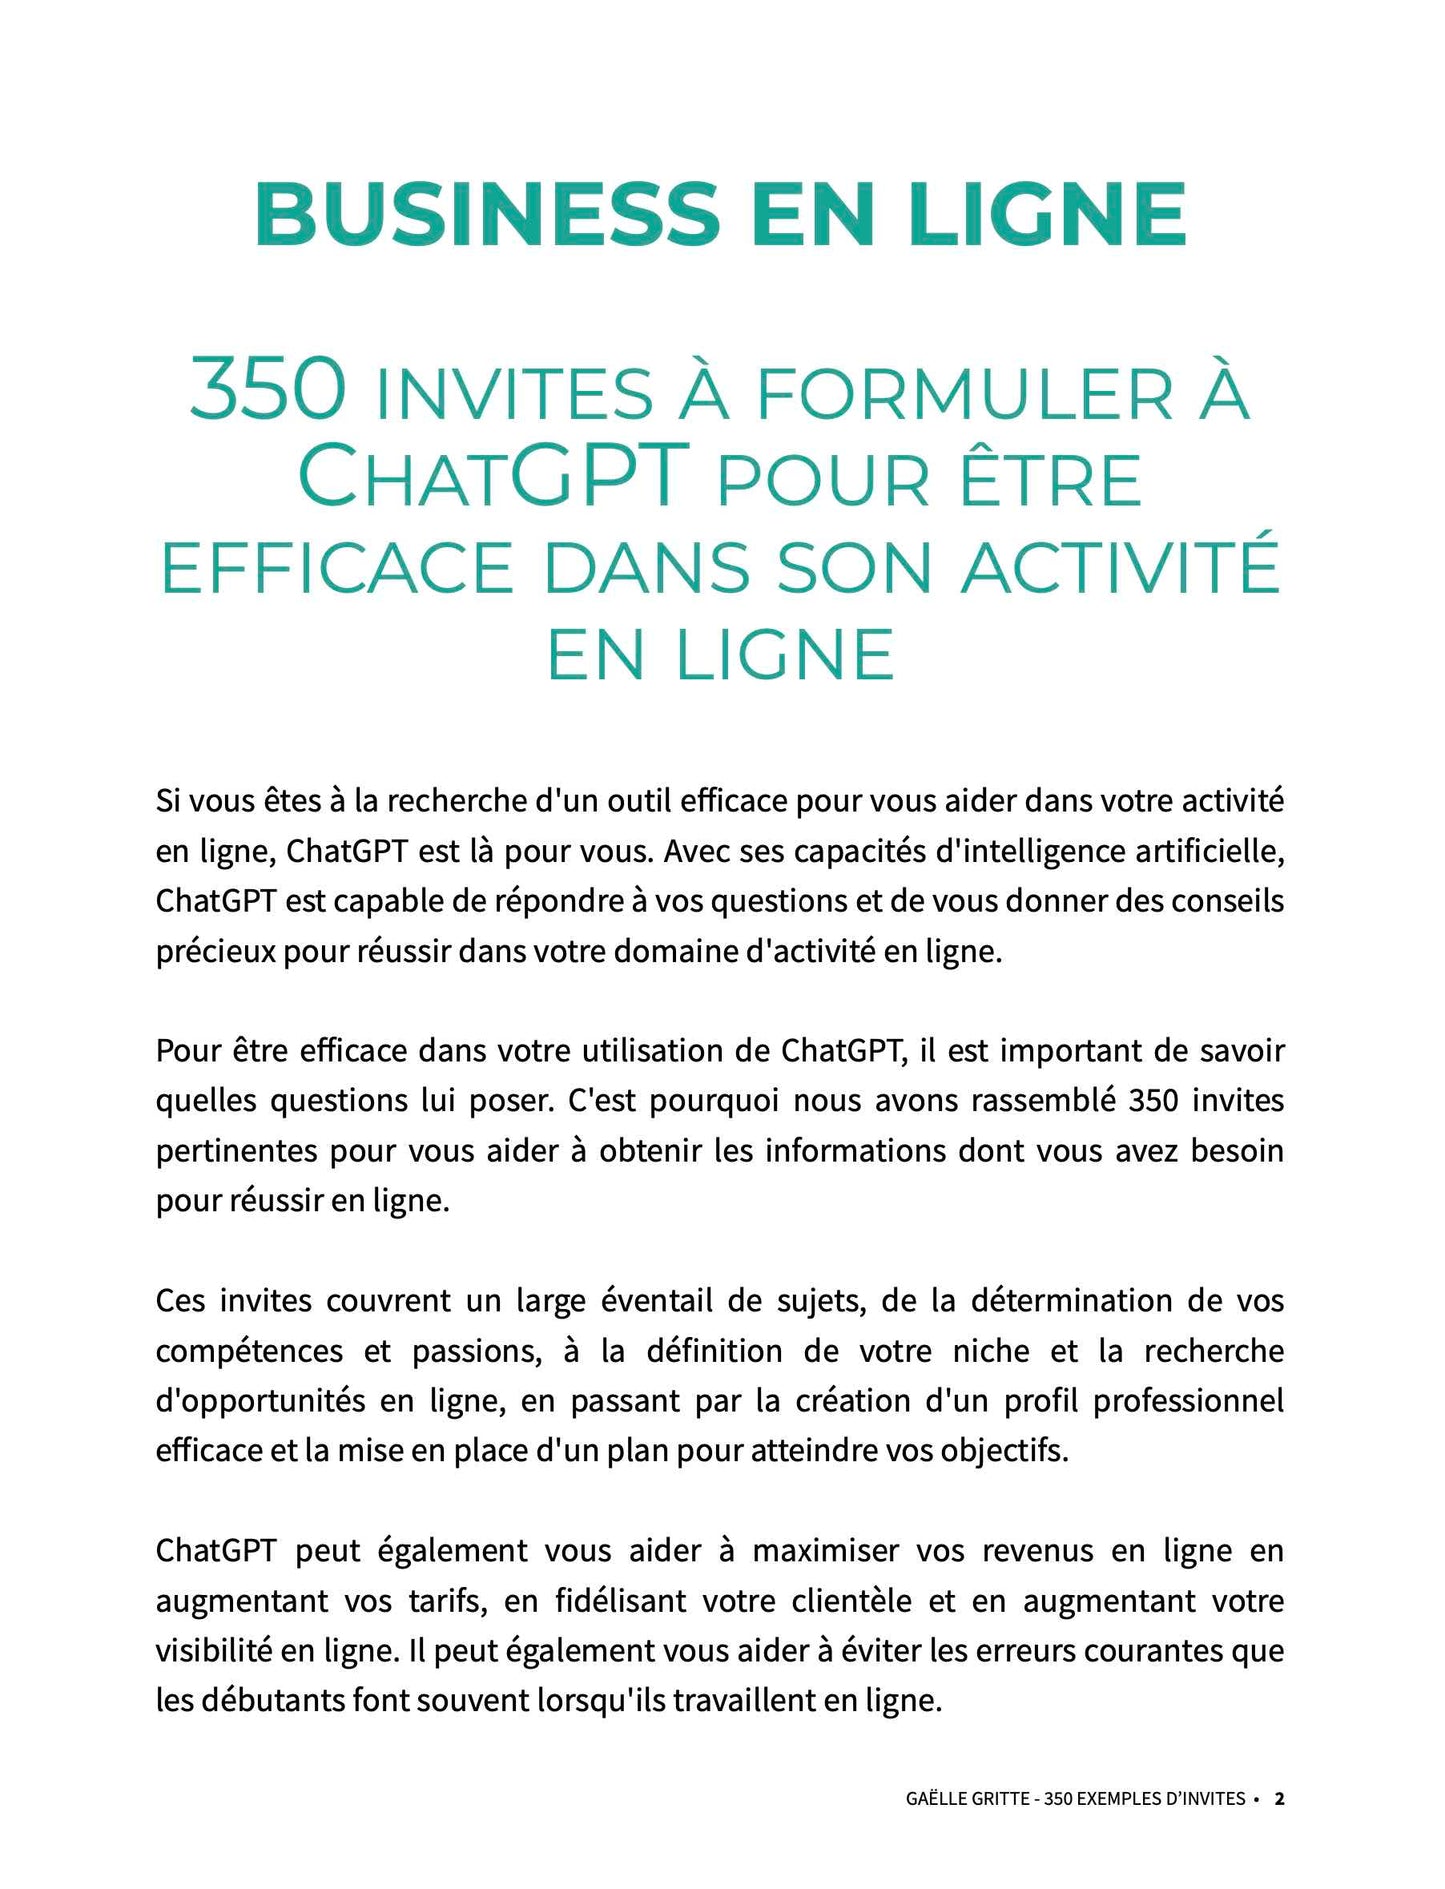 Pack "600 façons de gagner de l'argent en ligne avec ChatGPT"